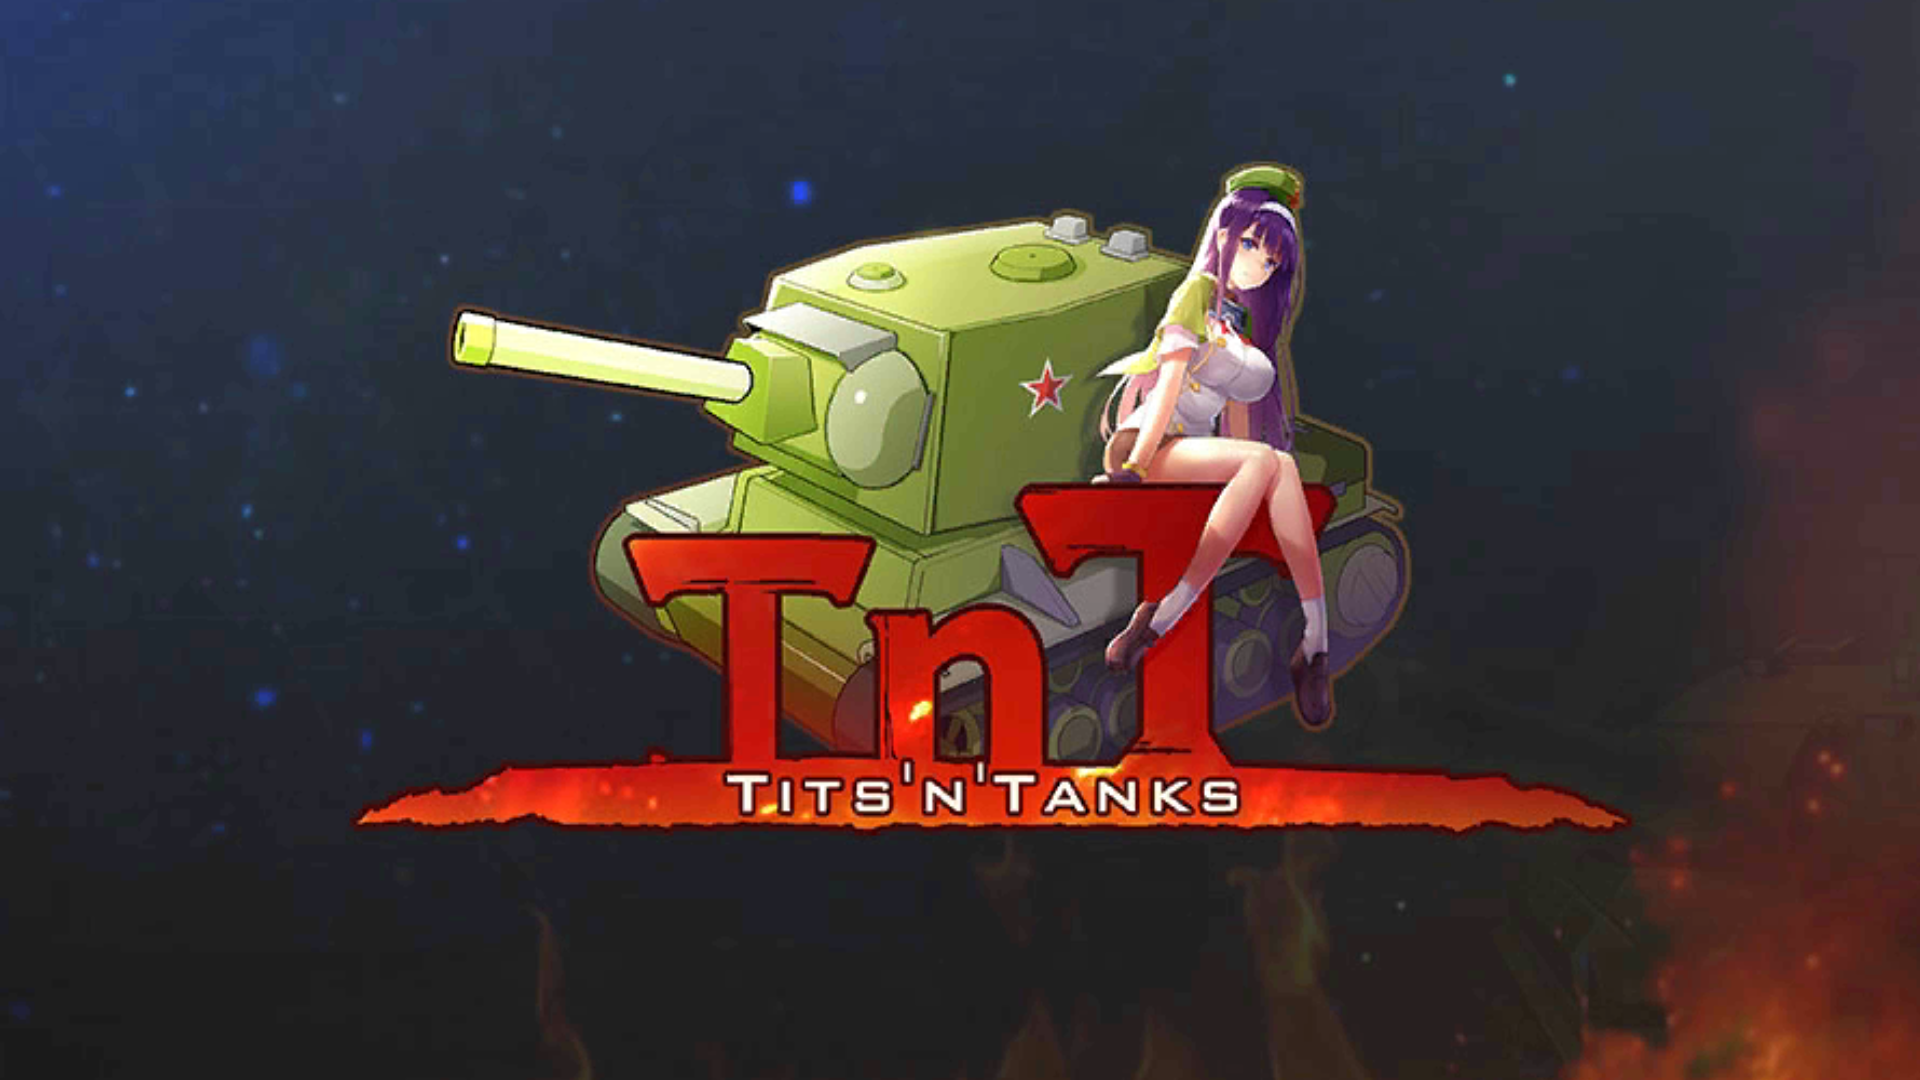 Tits tanks